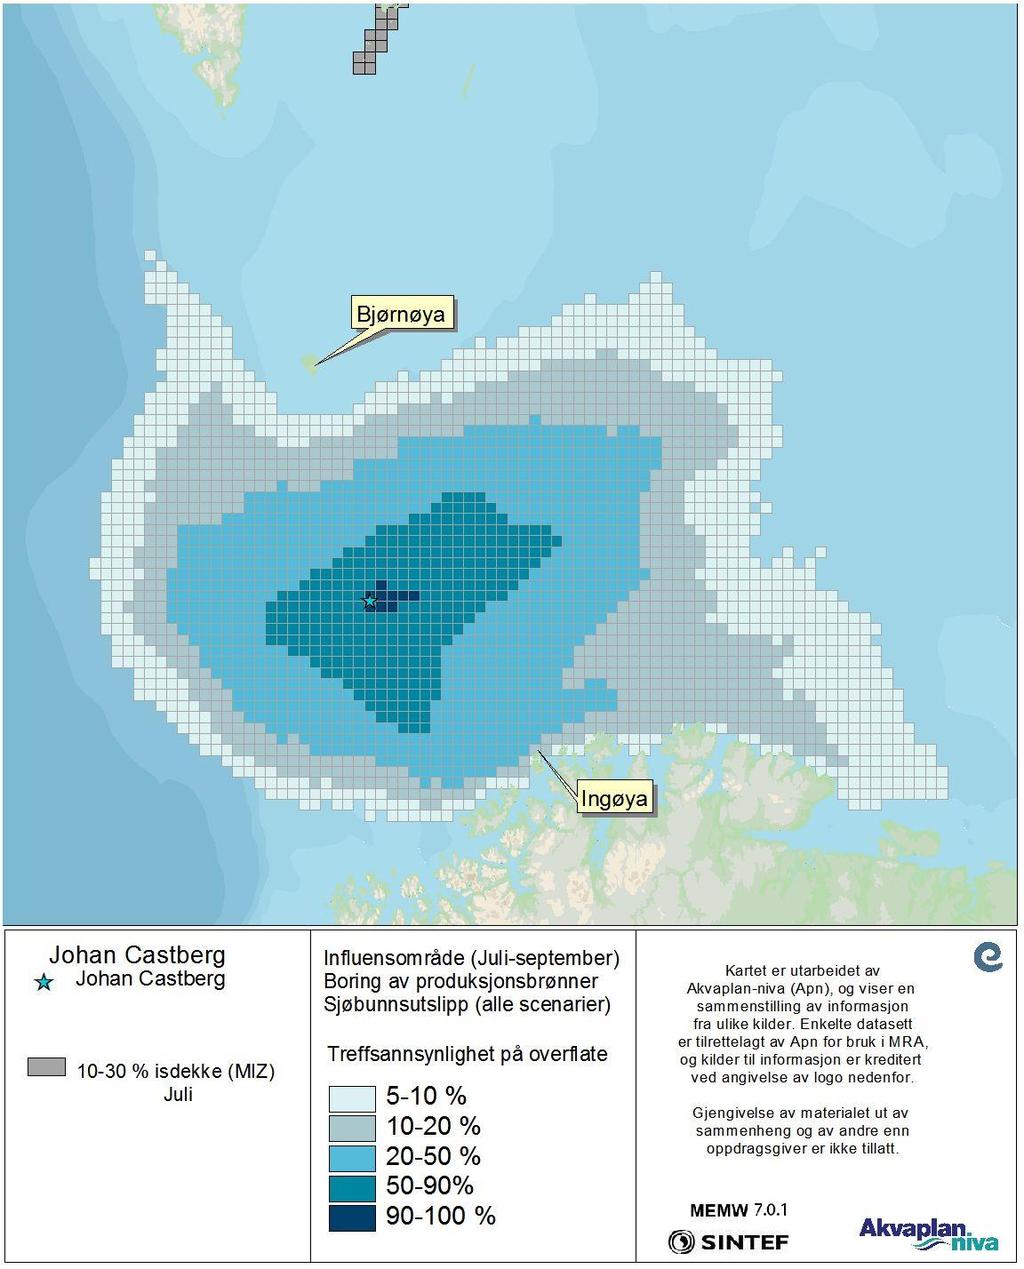 Figur 17 DFU-1, sjøbunnsutslipp (alle Scenarier- Statistikk for juli-september)- Treffsannsynlighet av mer enn 1 tonn olje på overflaten i en 10x10 km rute beregnet fra alle